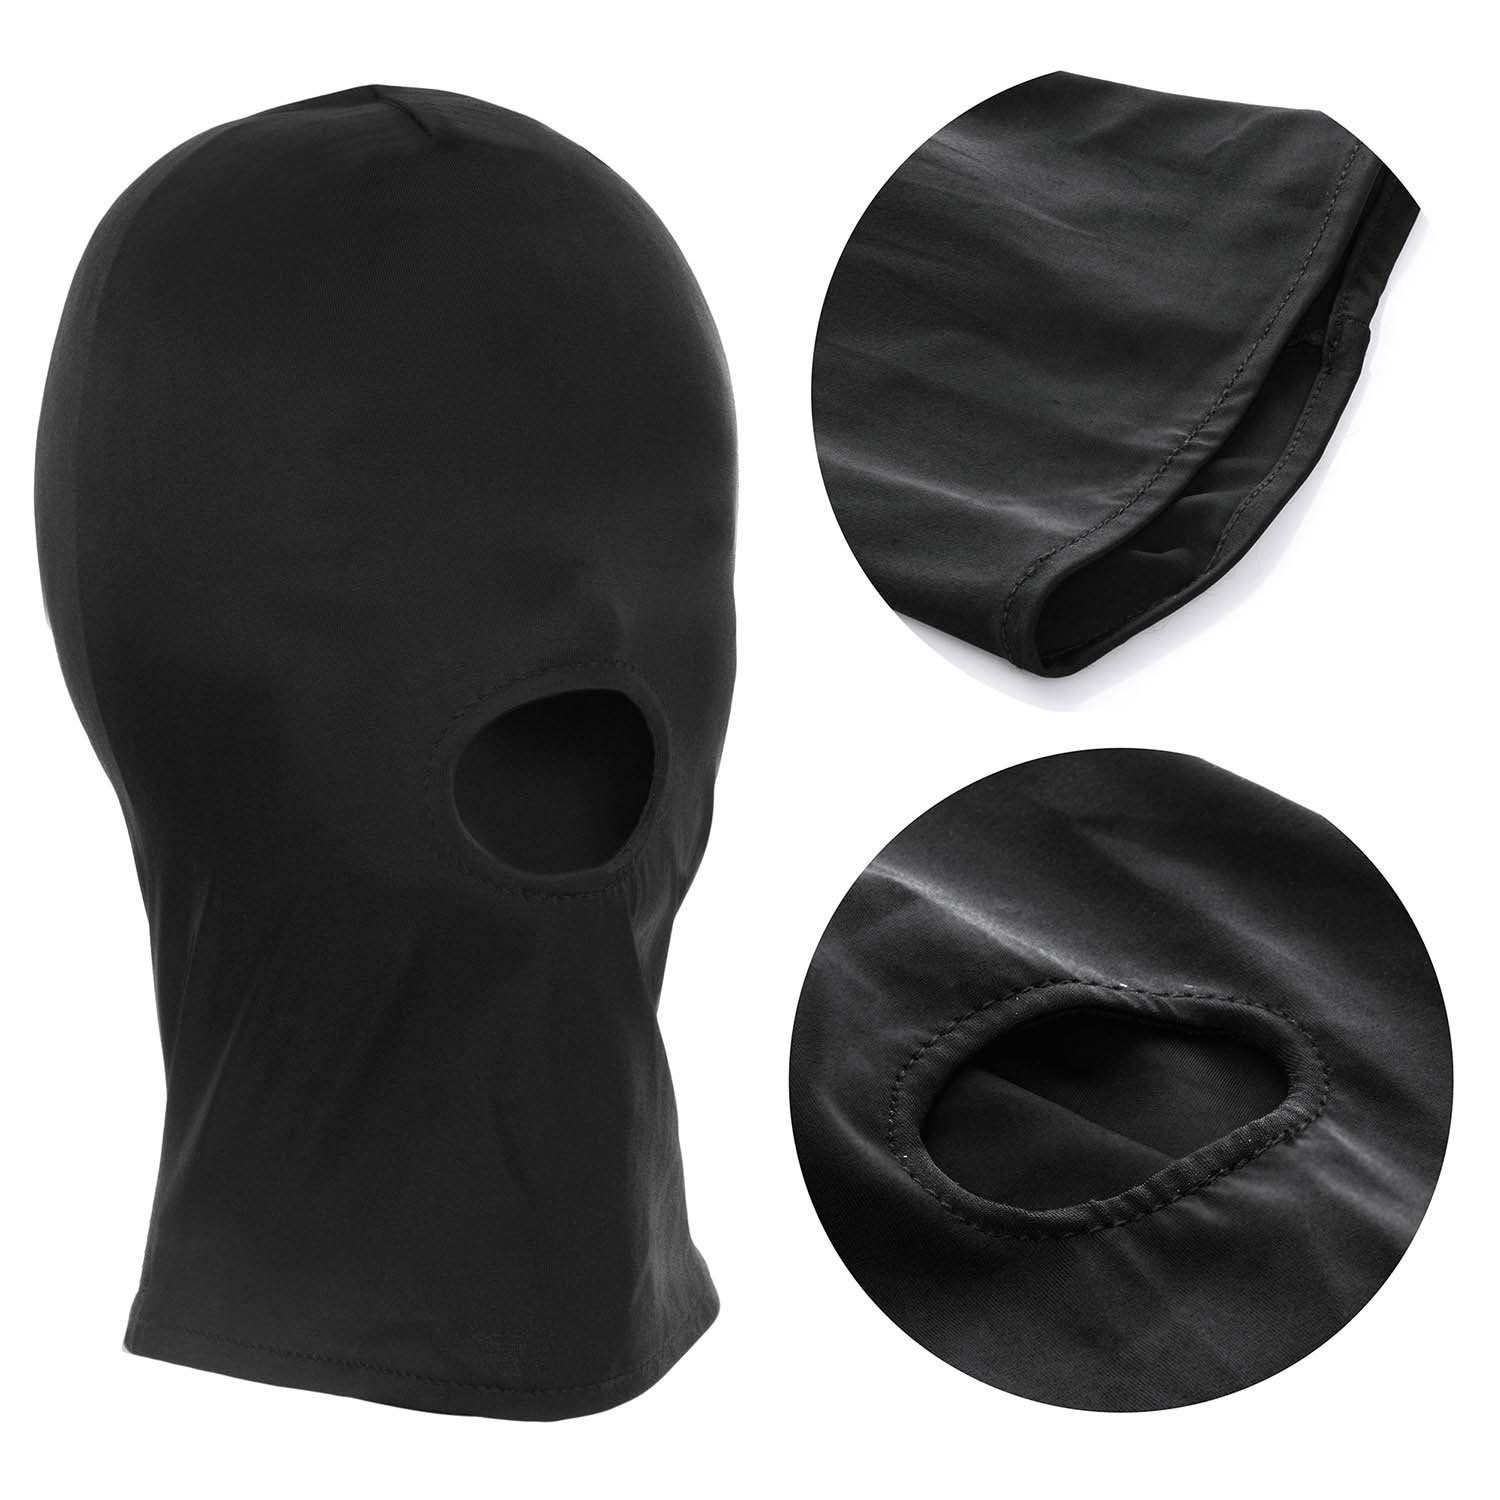 & Erotik-Maske BDSM Fetisch Maske Erotische Bondage Goods+Gadgets Maske,